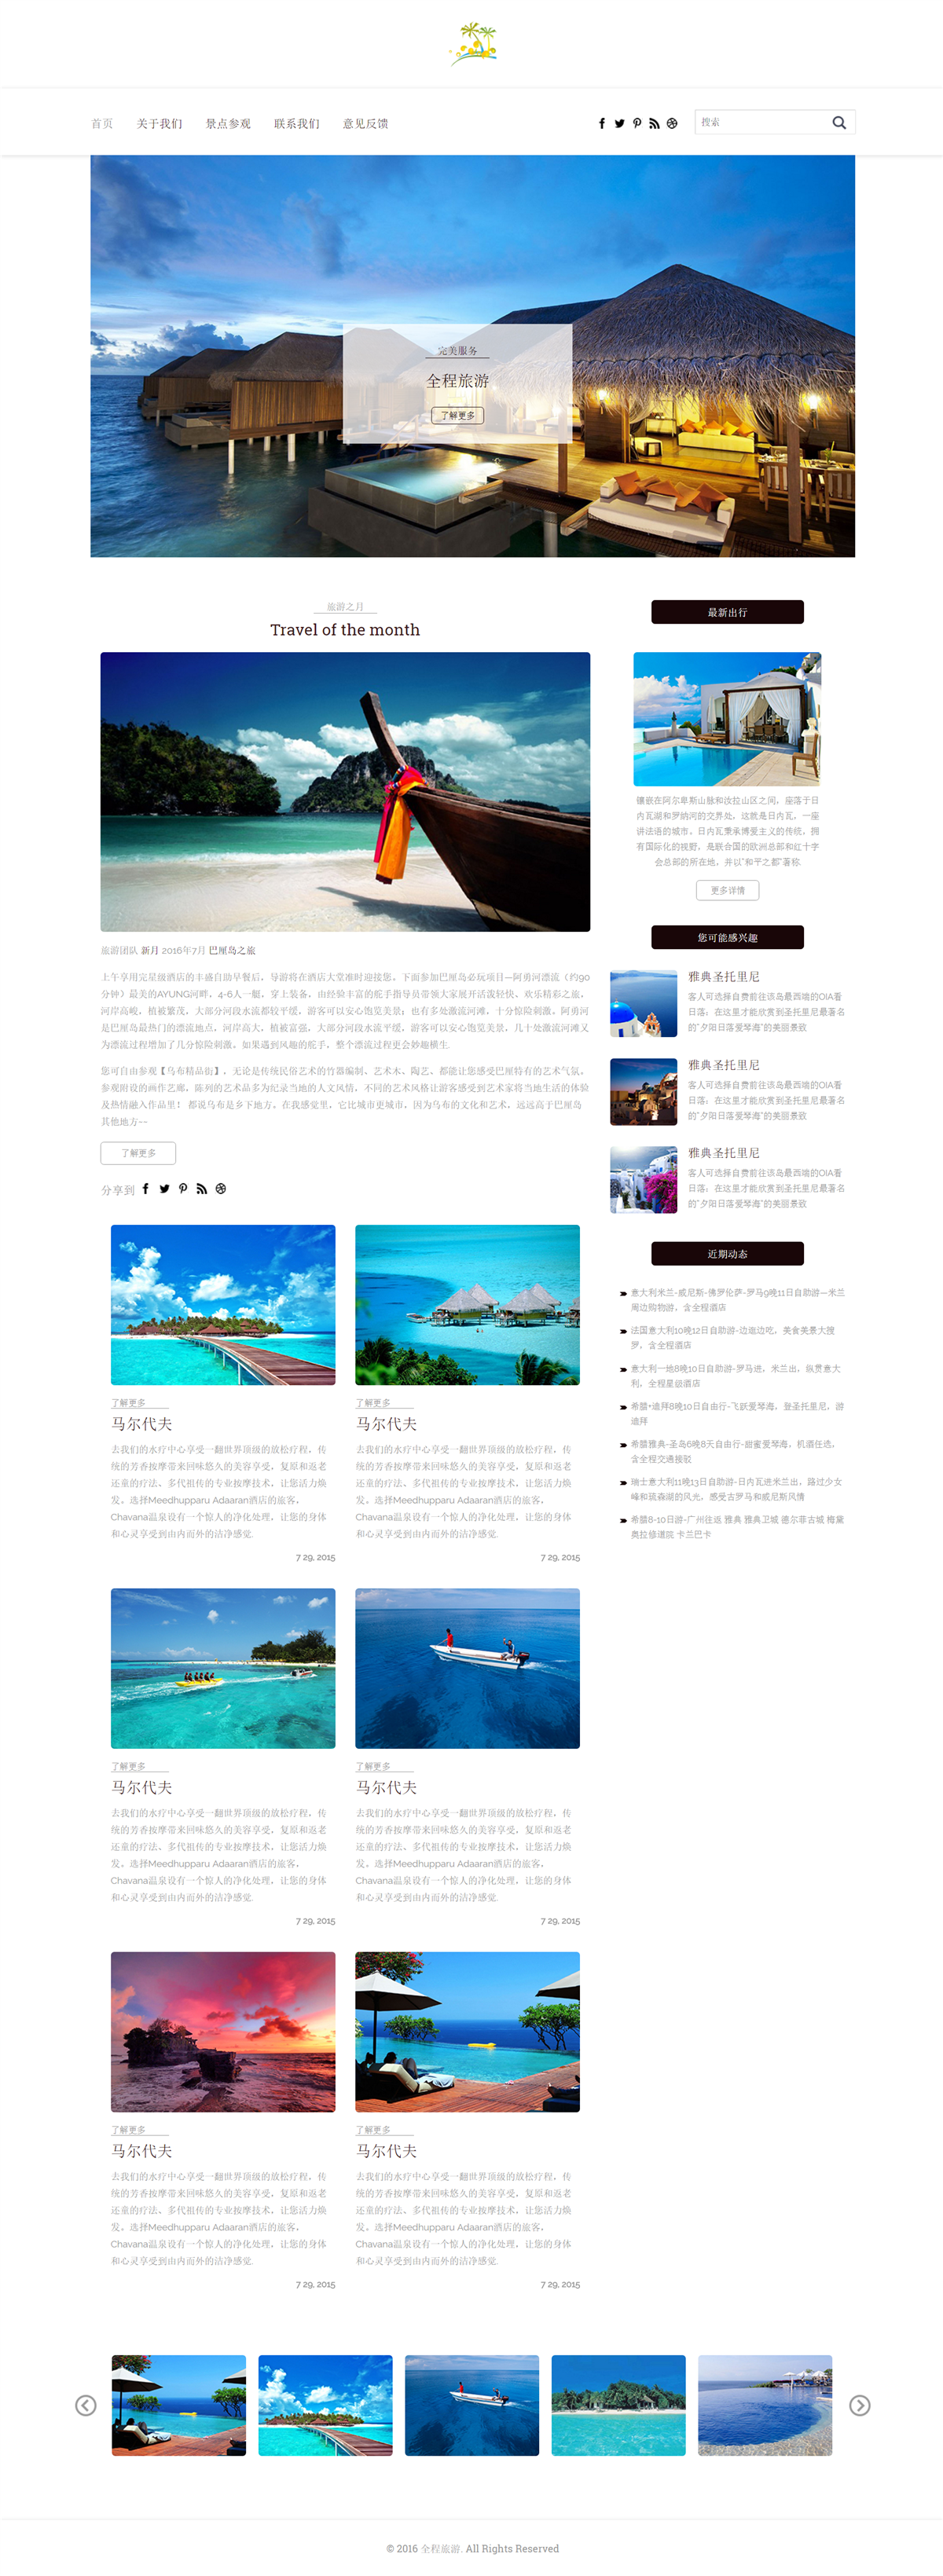 Tourism web design 